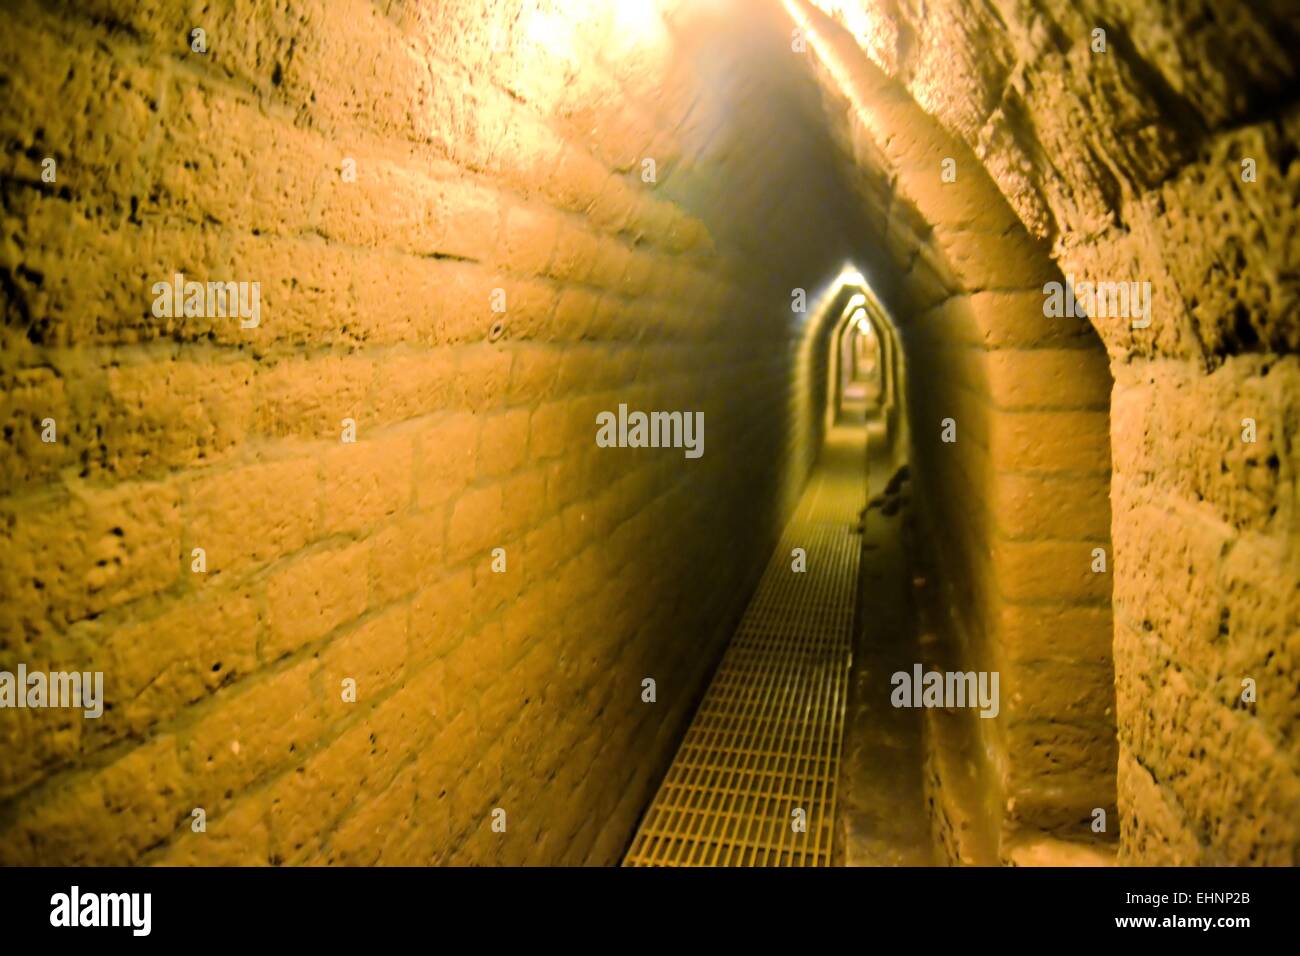 Túneles bajo Cholula, la pirámide más grande hecha por el hombre Foto de stock